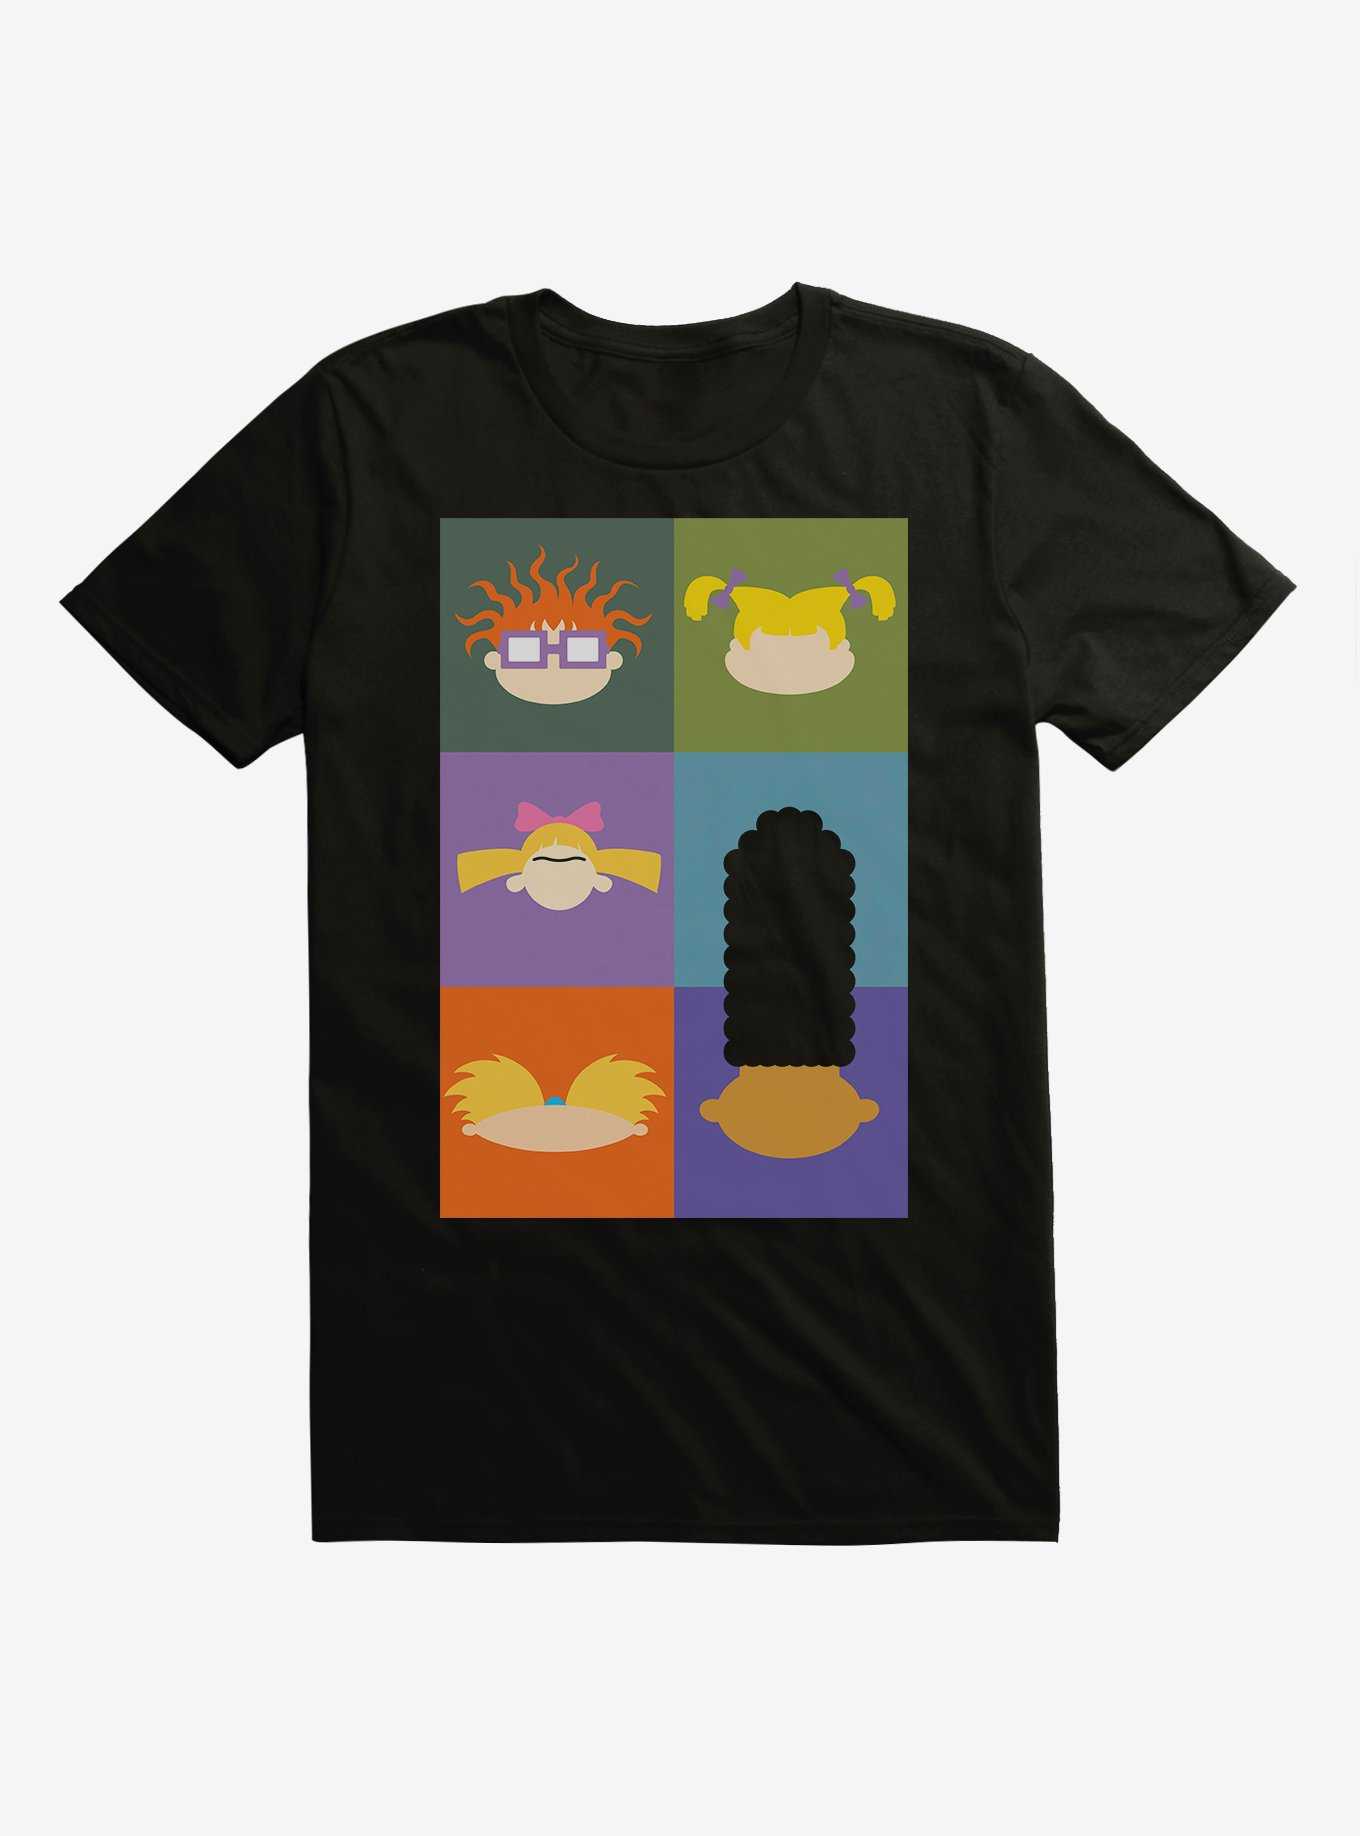 Rugrats Nick 90s Pop Art T-Shirt, , hi-res